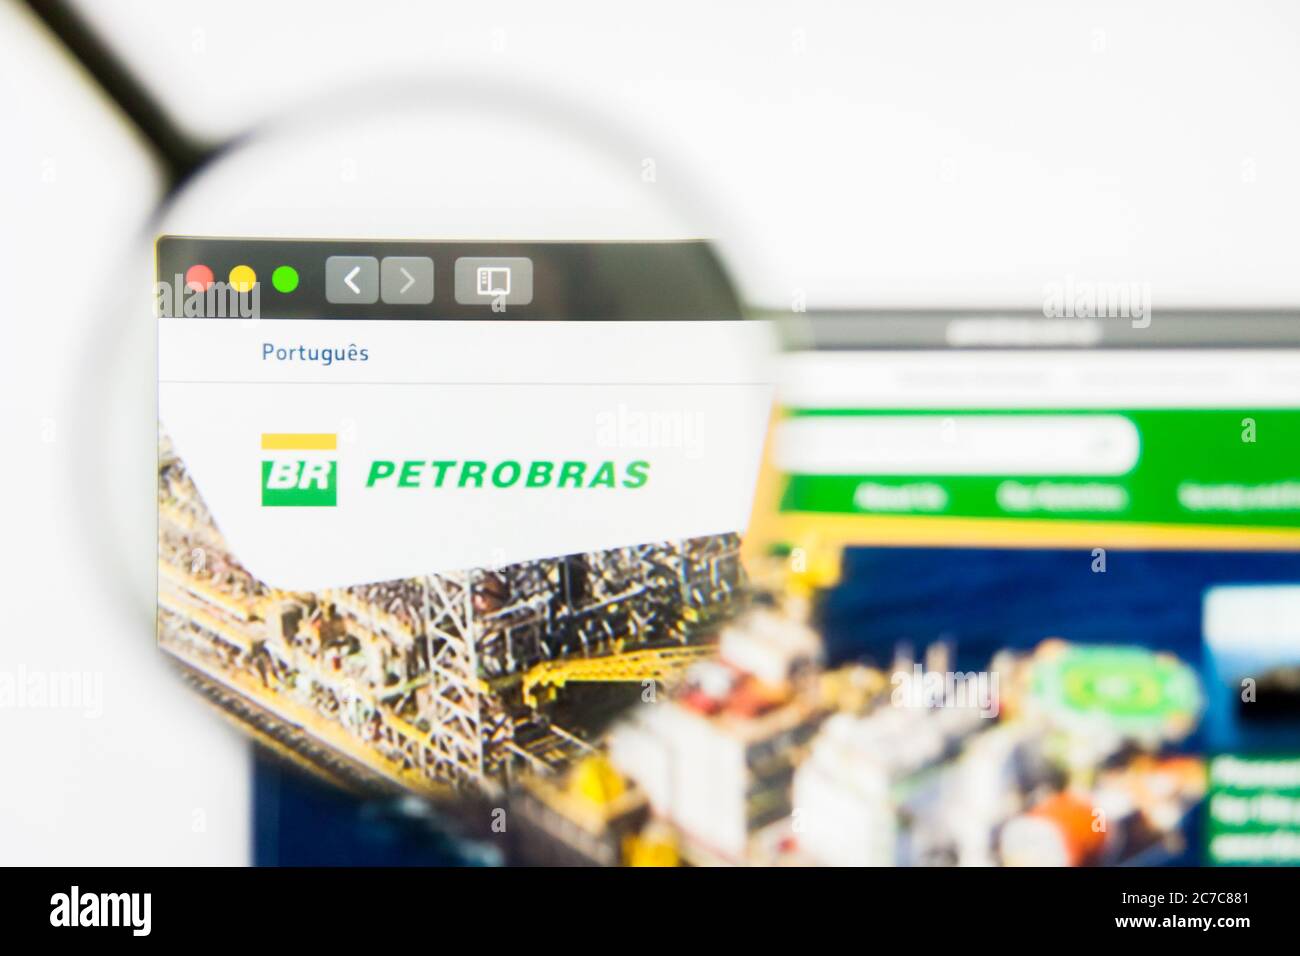 Los Angeles, Californie, Etats-Unis - 25 mars 2019 : éditorial illustratif de la page d'accueil du site de Petrobras. Logo Petrobras visible sur l'écran. Banque D'Images